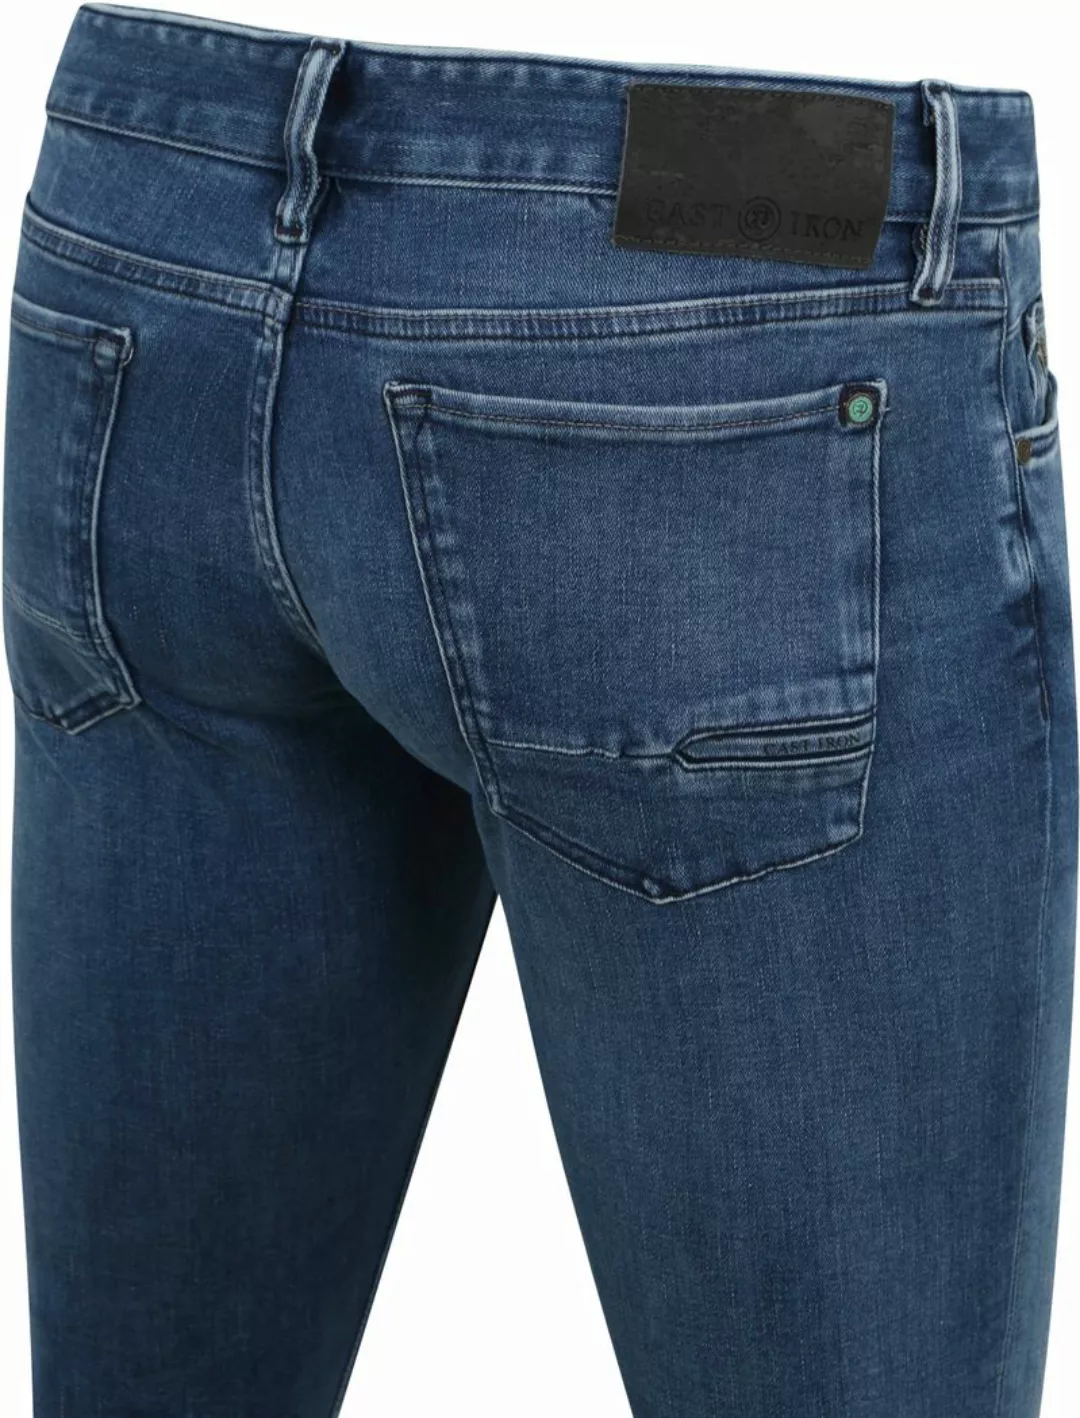 Cast Iron Riser Jeans Blau IIW - Größe W 33 - L 34 günstig online kaufen